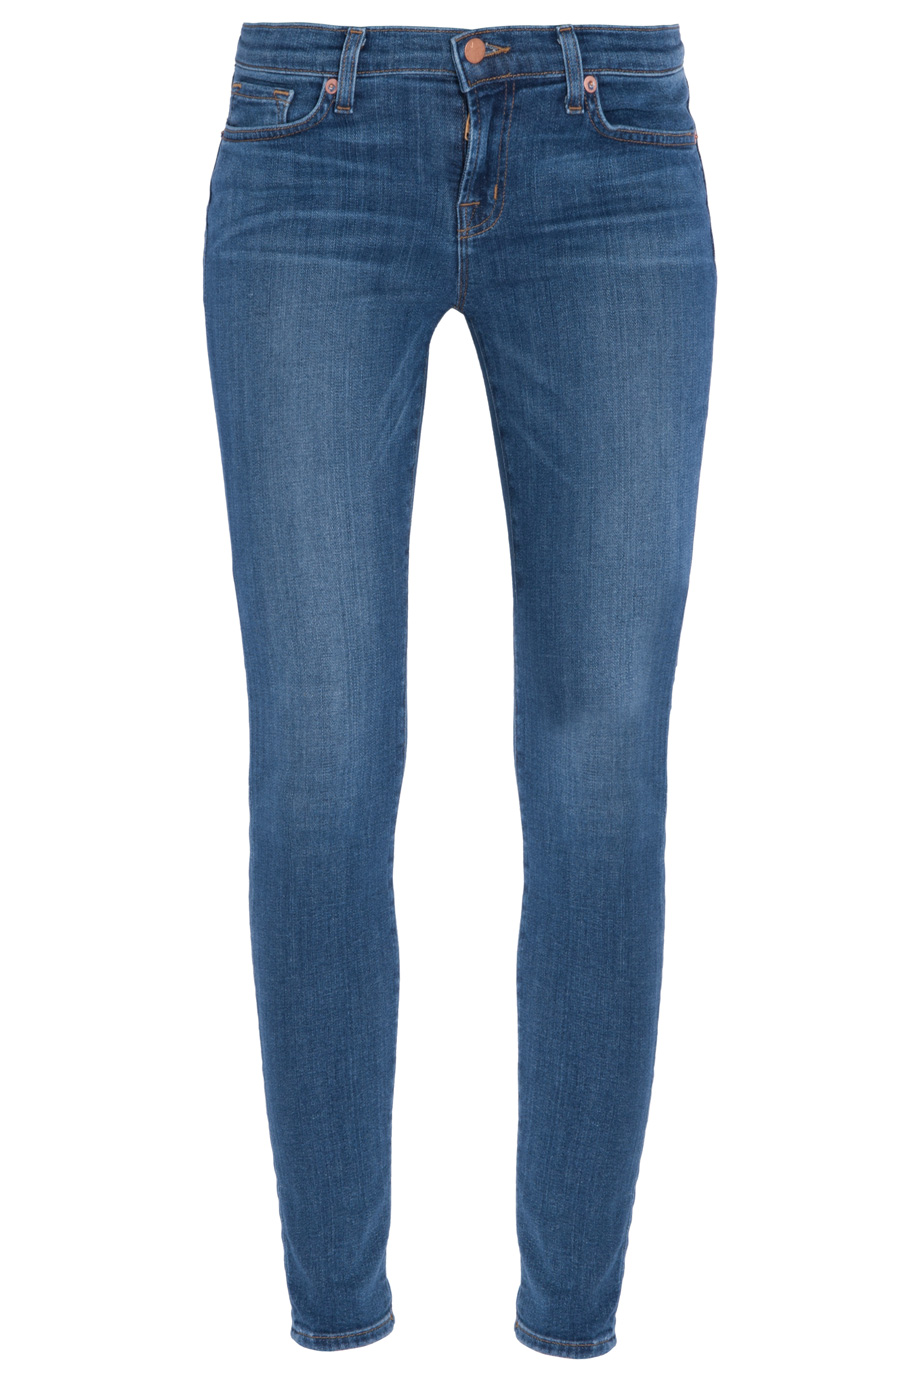 J brand Tencel Skinny Jeans in Blue | Lyst